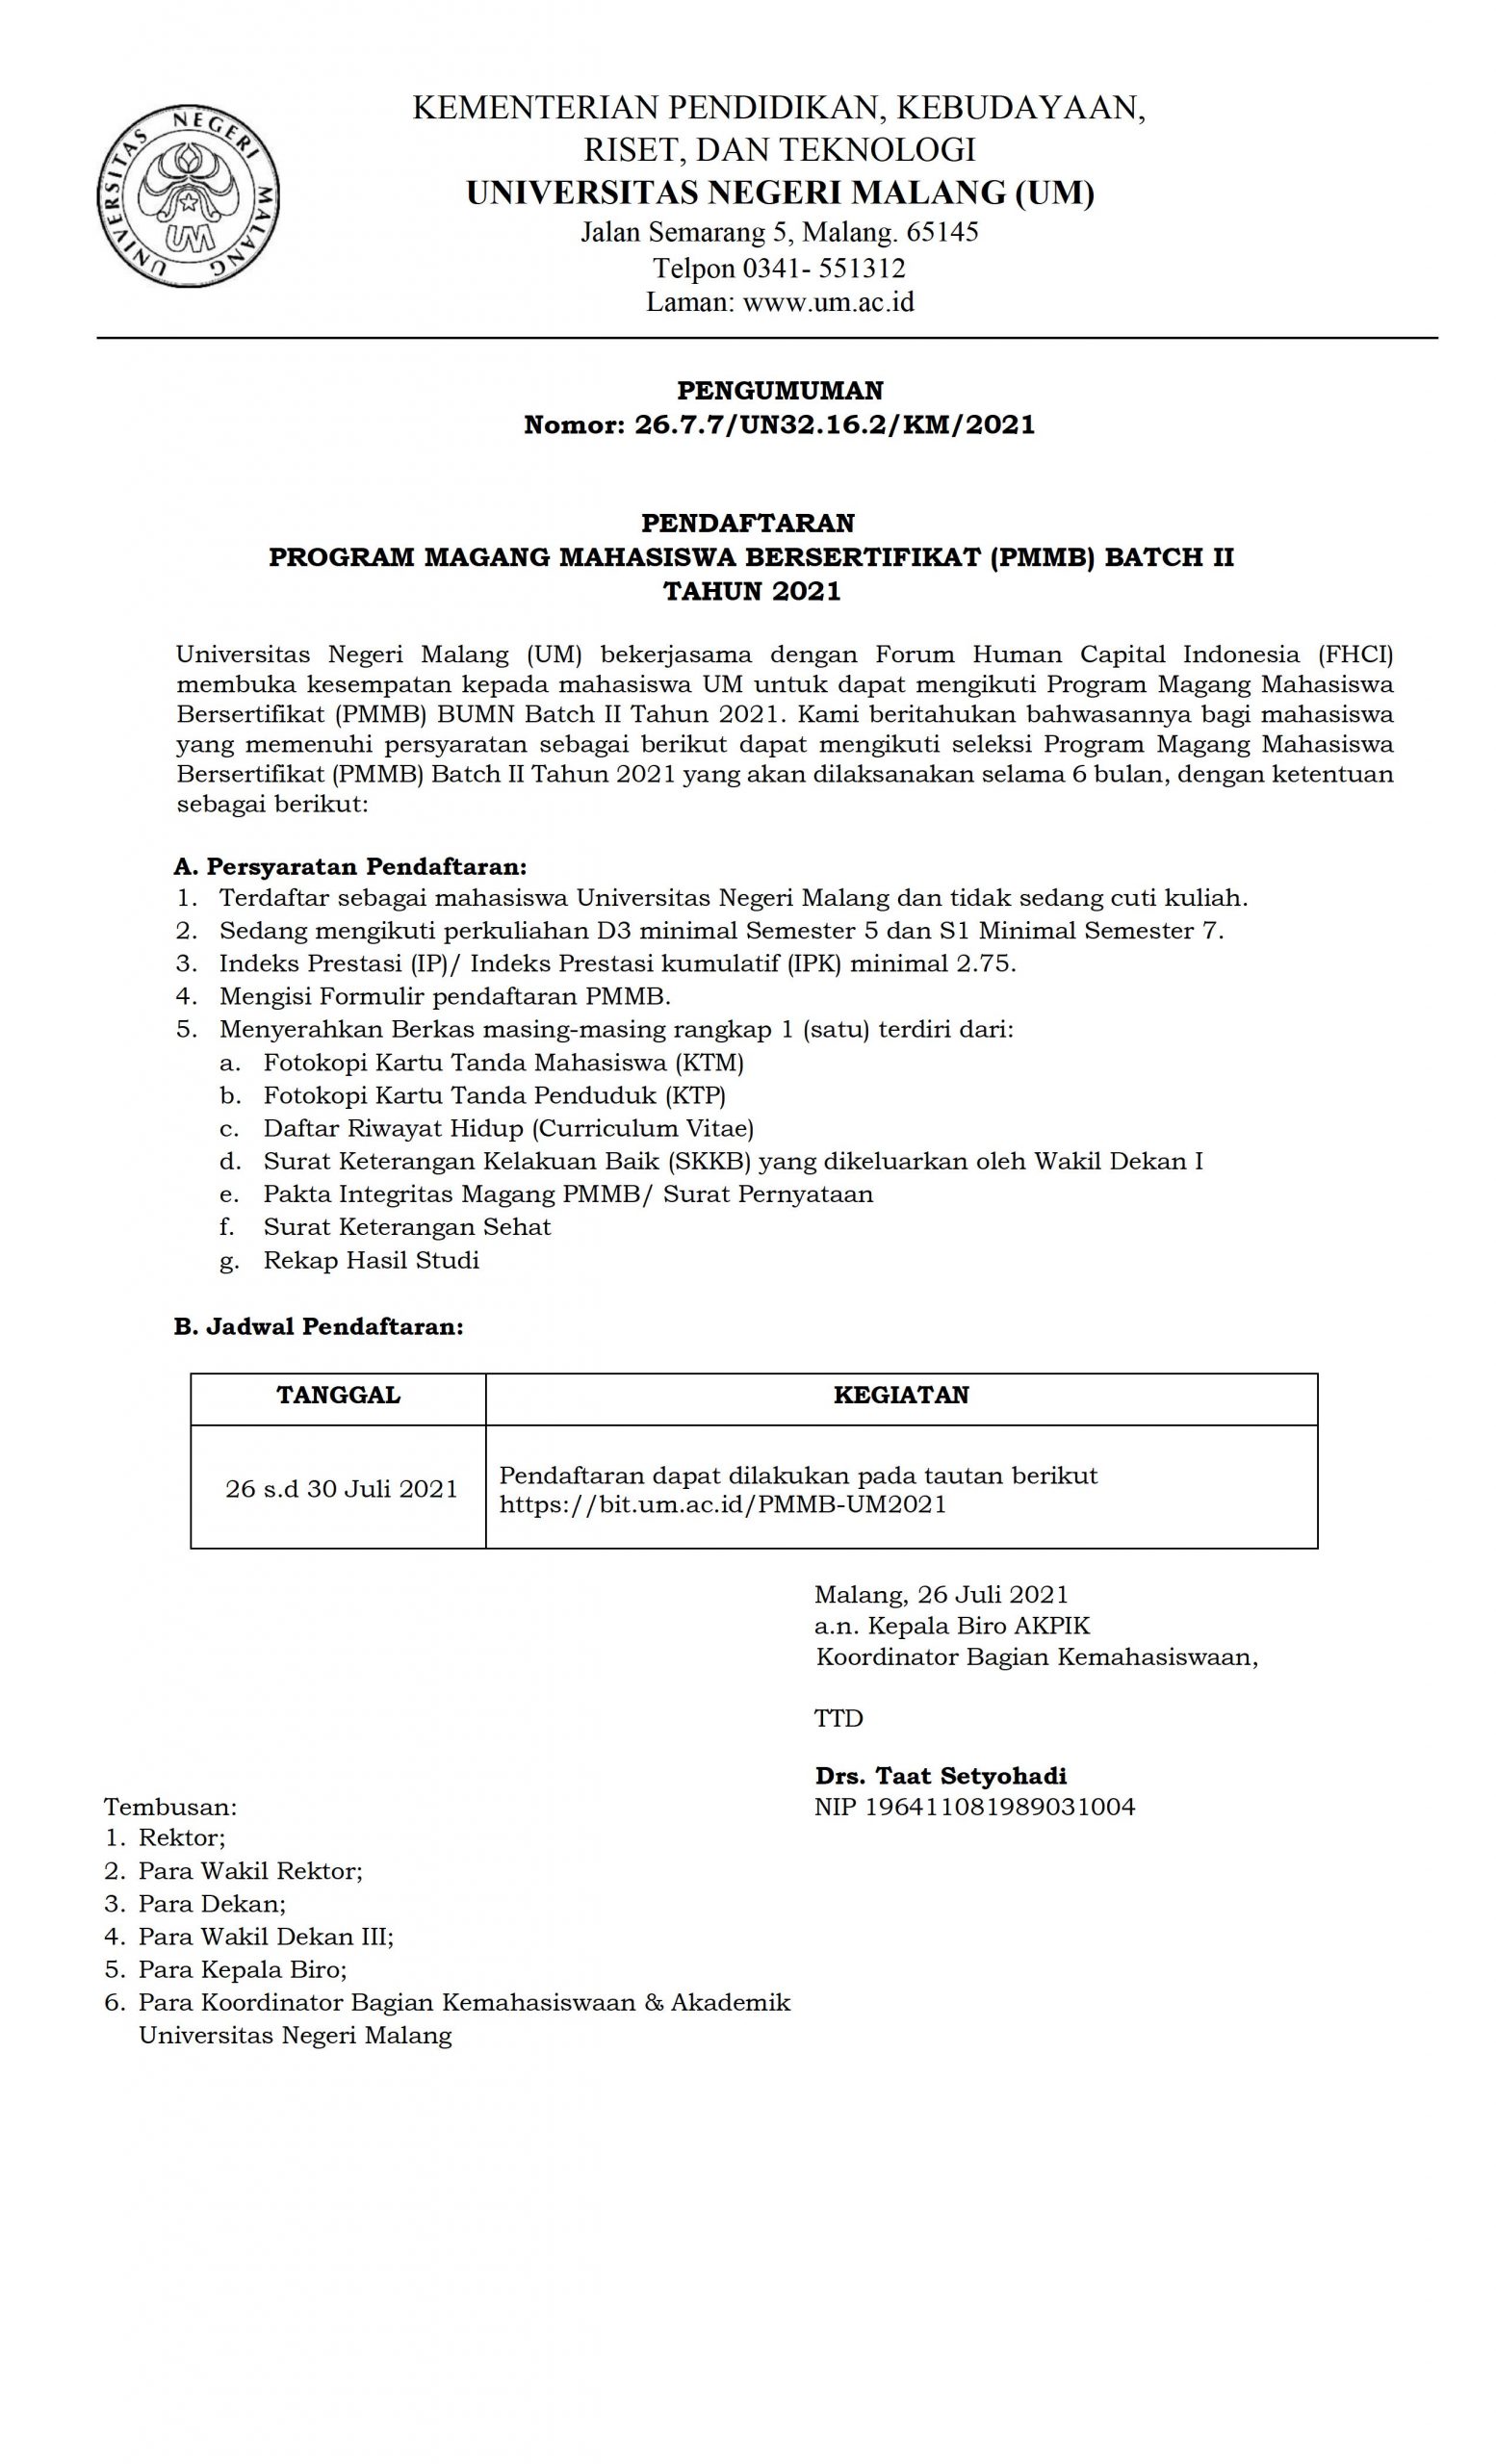 Pendaftaran Program Magang Mahasiswa Bersertifikat (PMMB) UM Batch II Tahun 2021